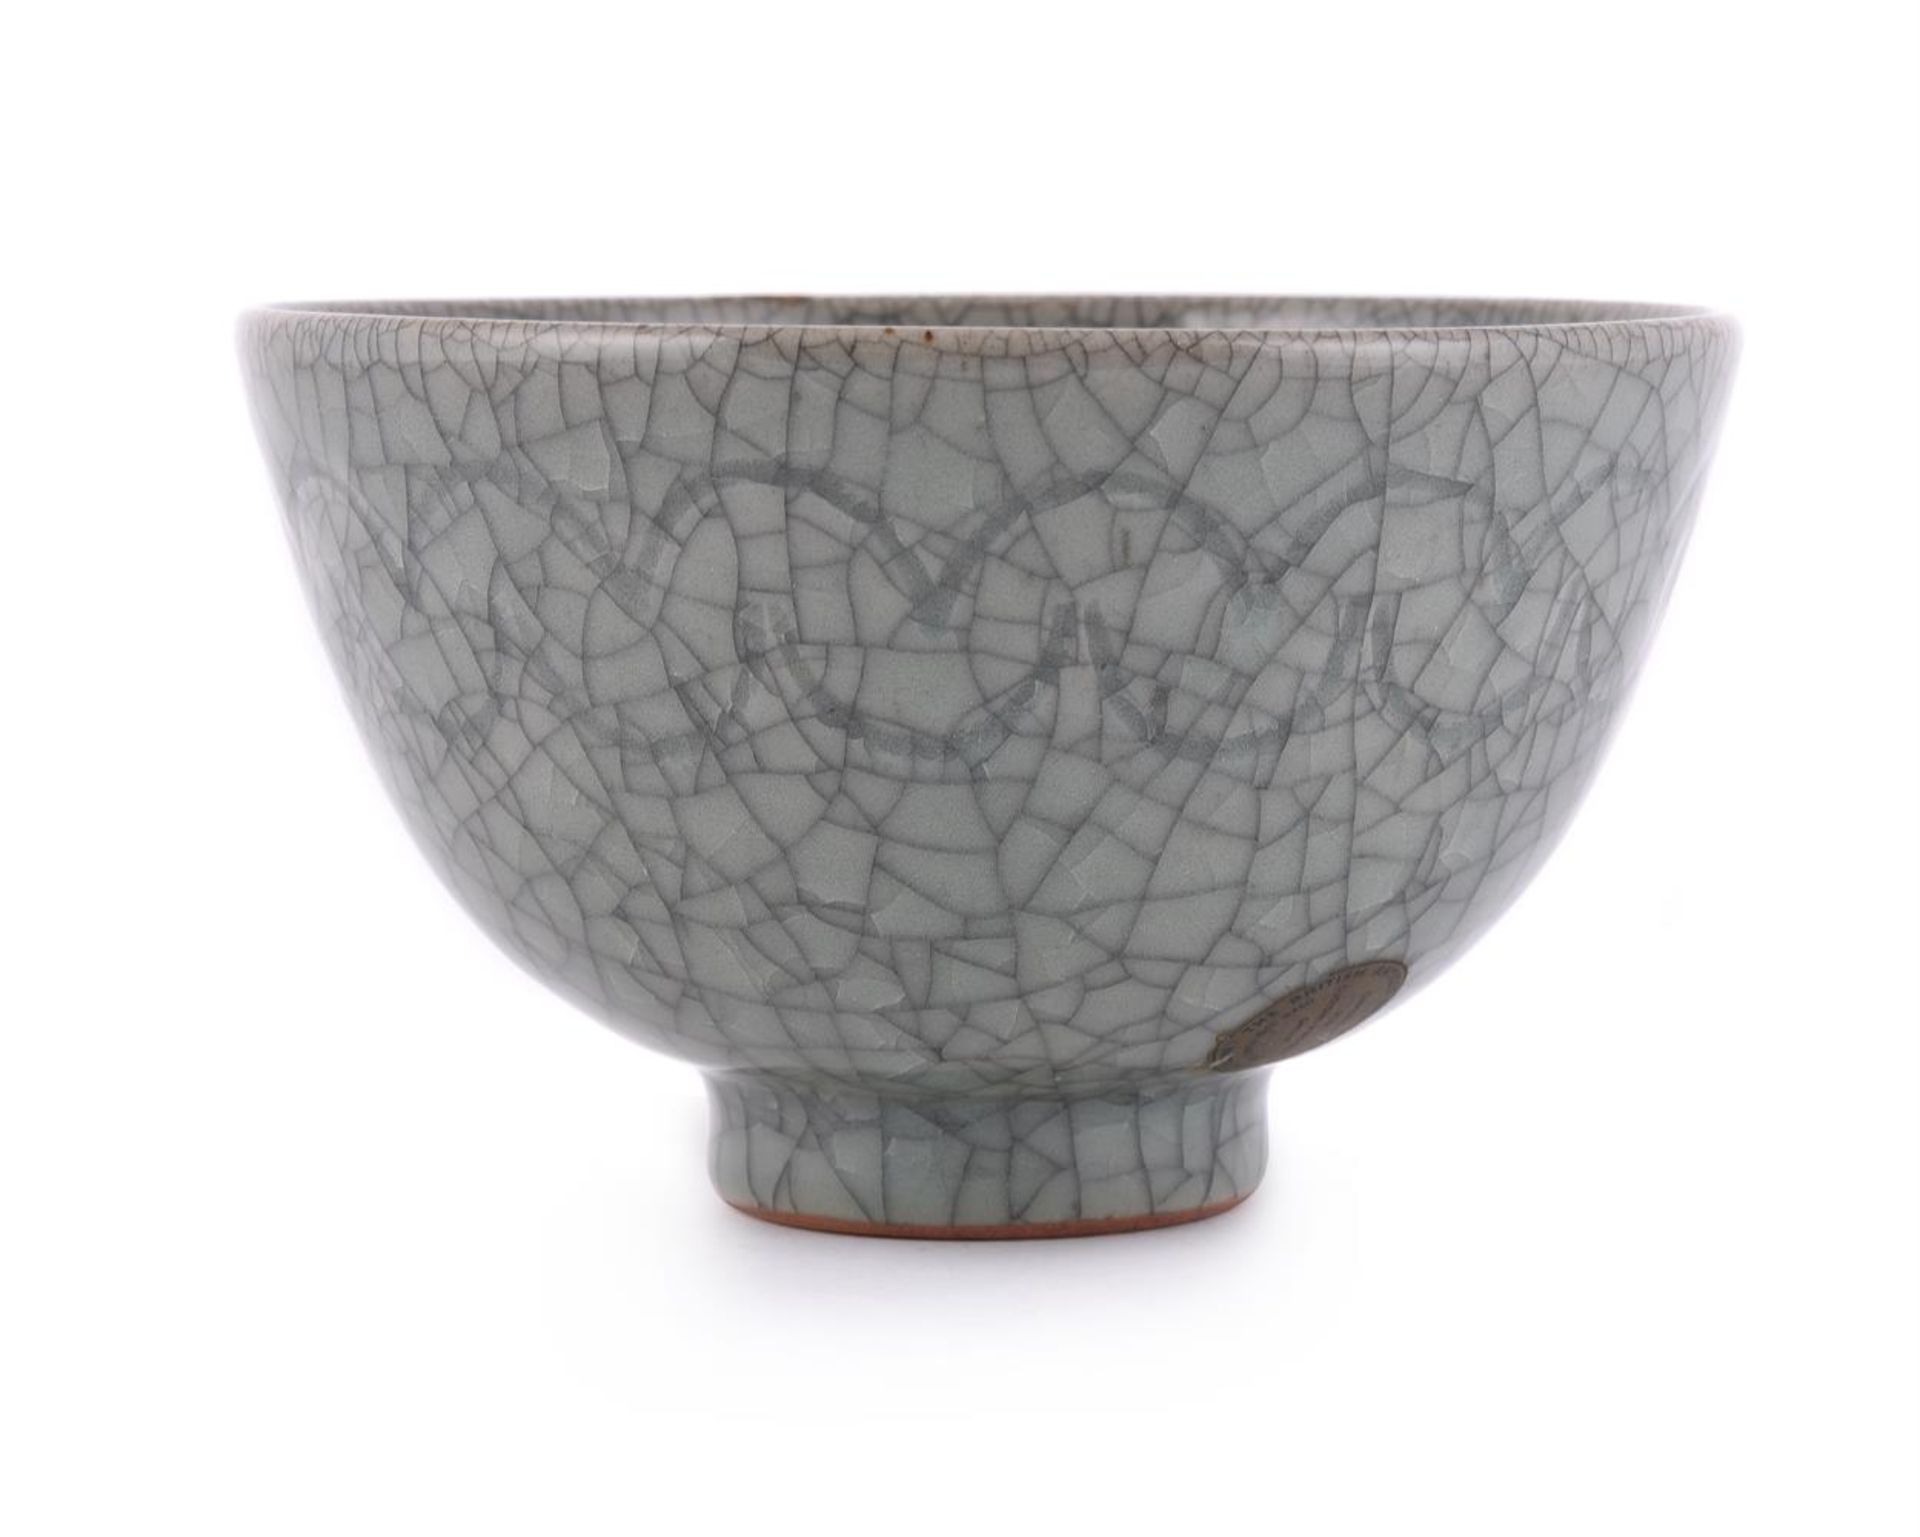 A Korean crackled-glazed bowl - Image 2 of 6